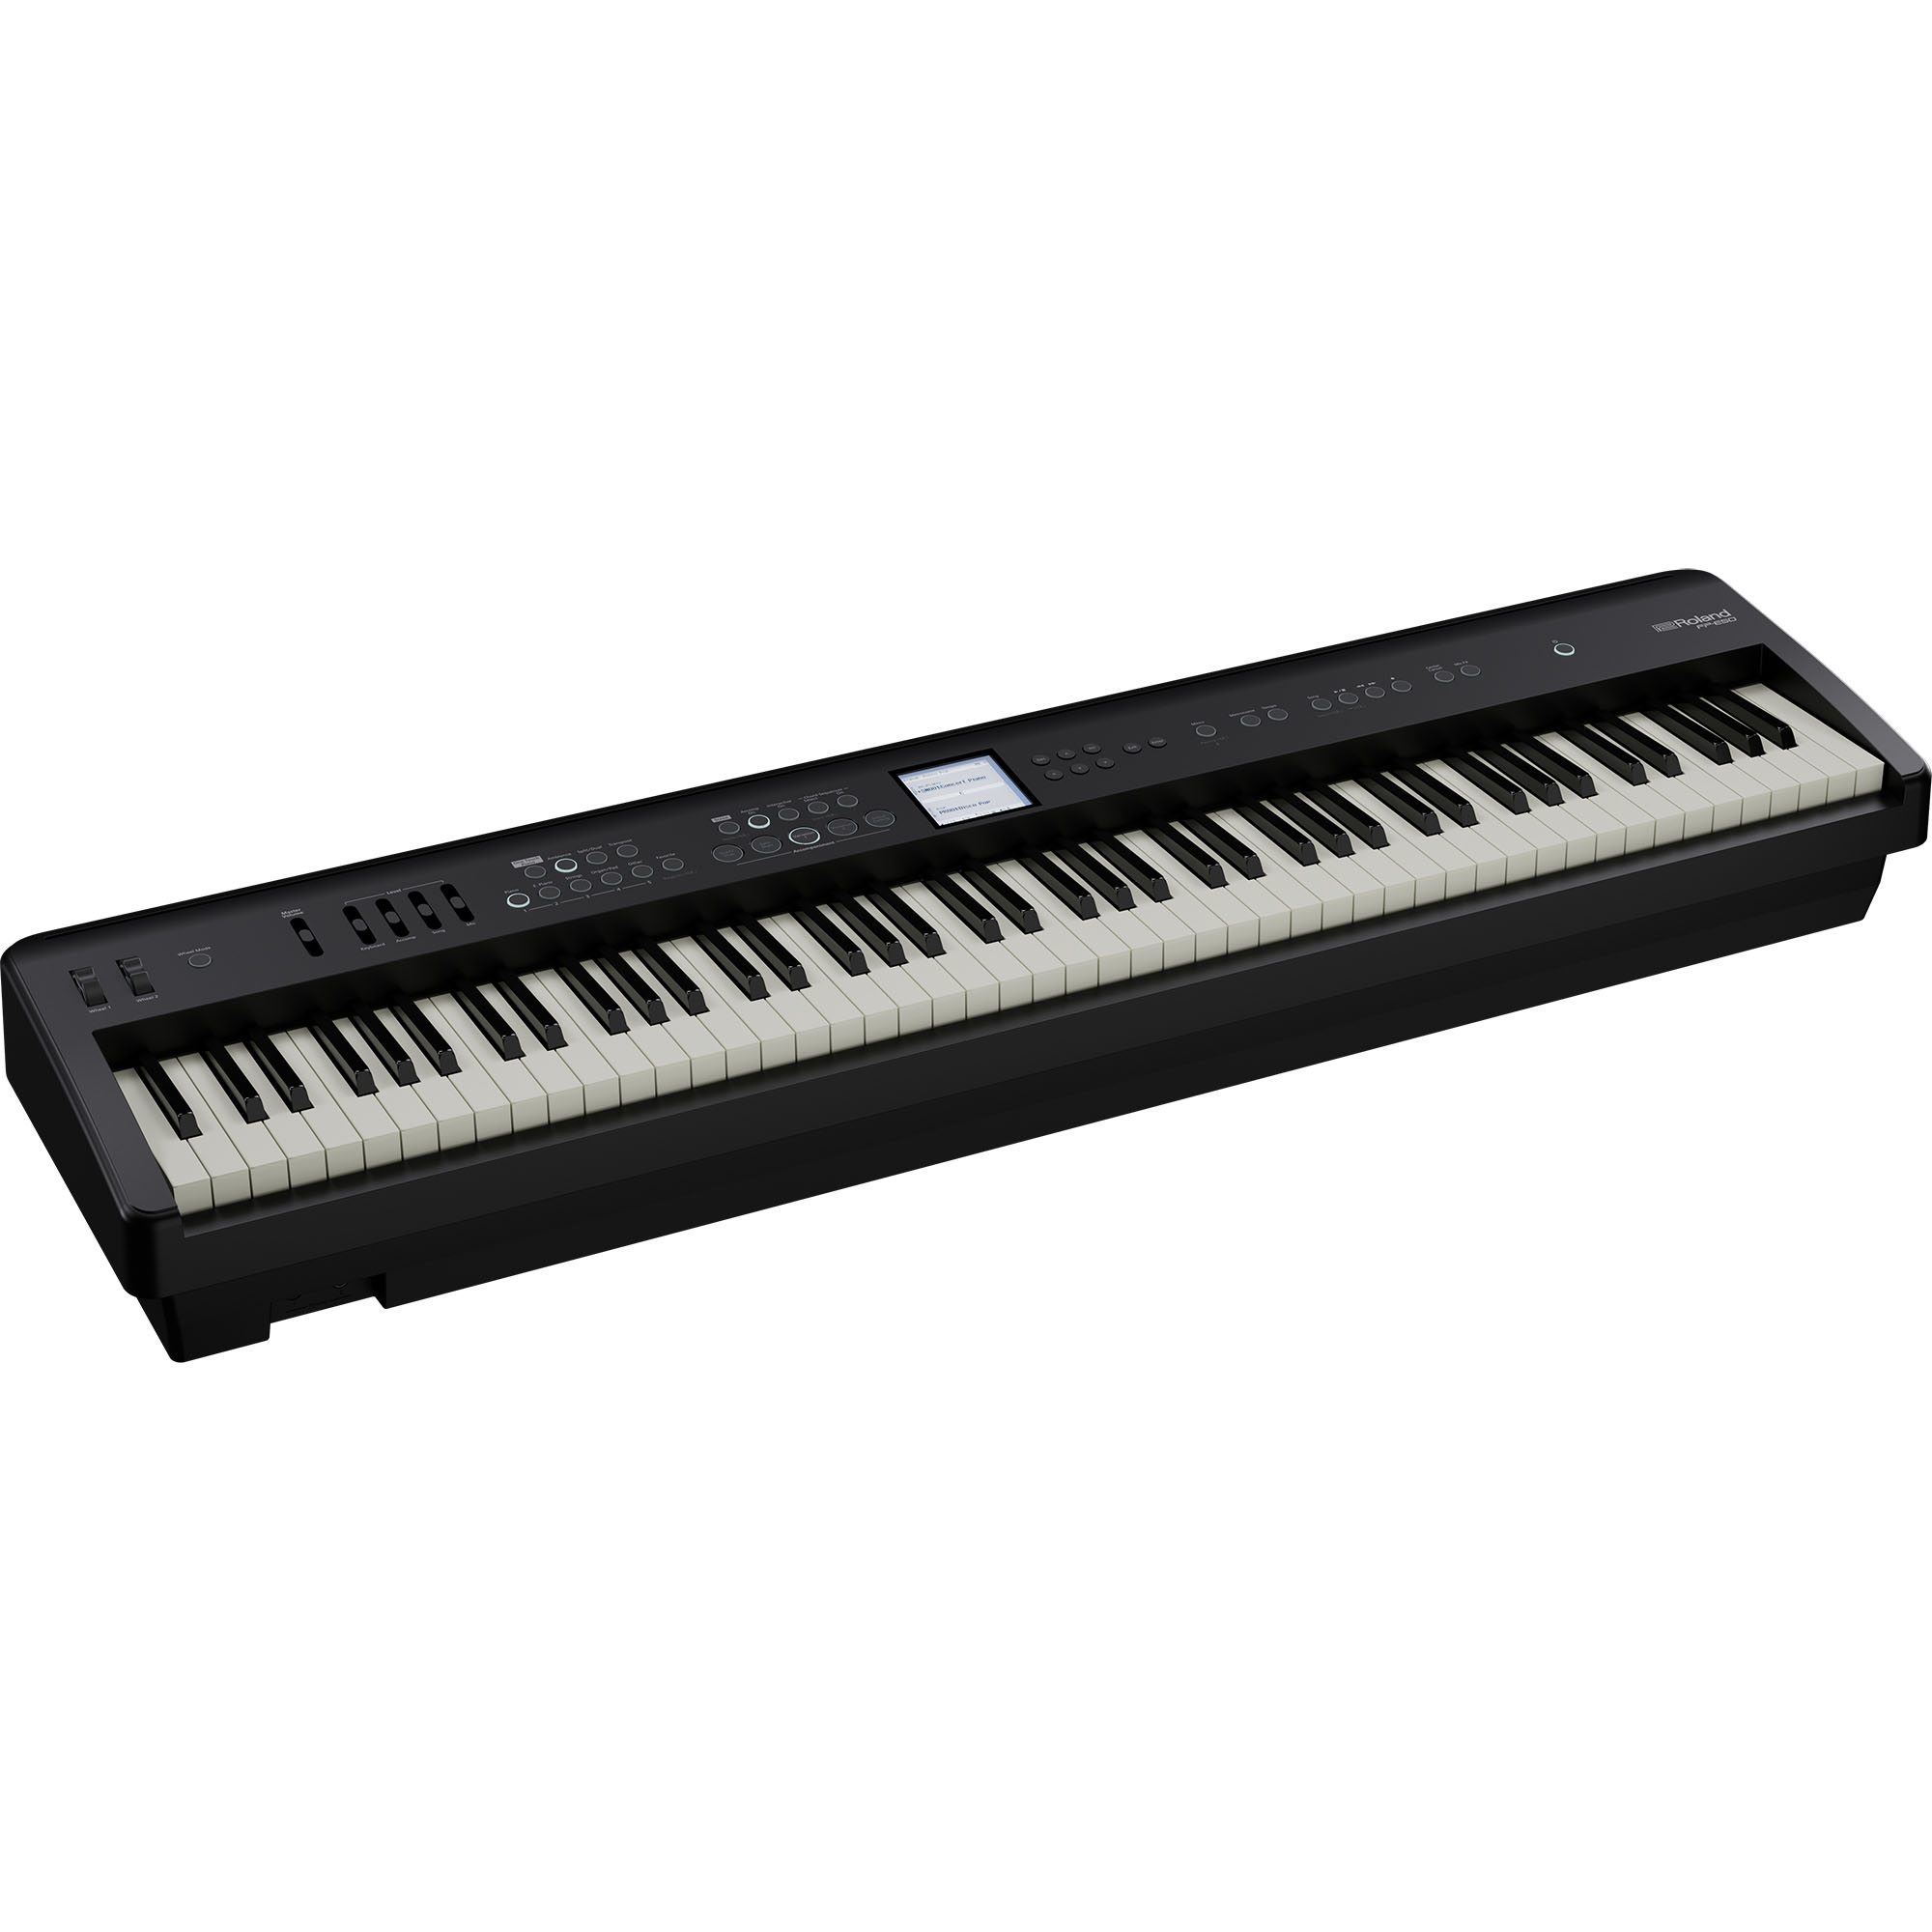 Roland Fp-e50 - Portable digital piano - Variation 1